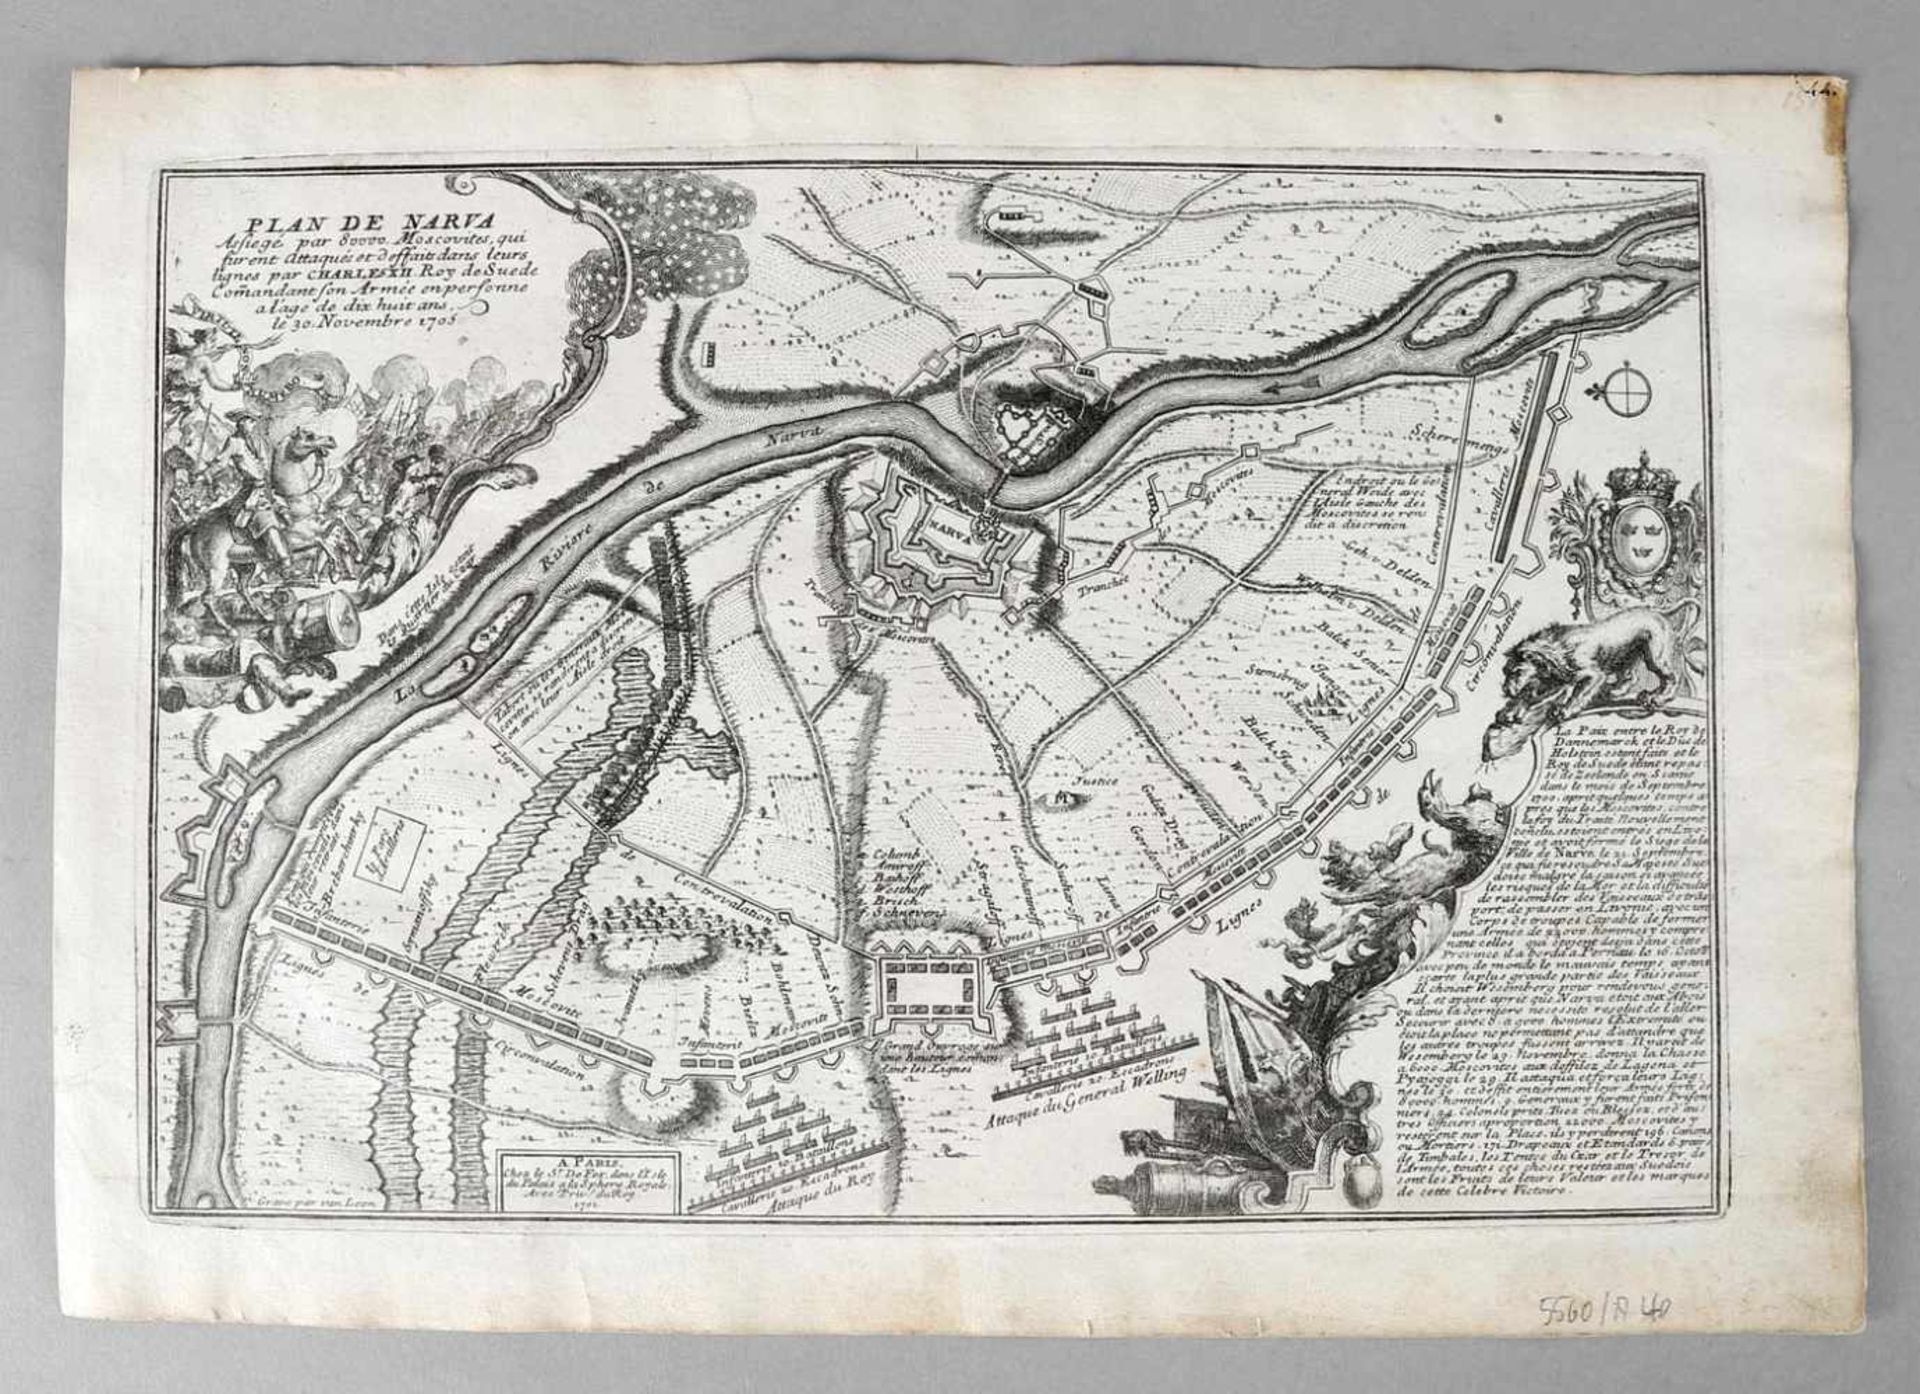 "Plan de Narva", Kupferstich auf dünnem Bütten, um 1705seltene Karte der Schlacht von Narva (30.11.